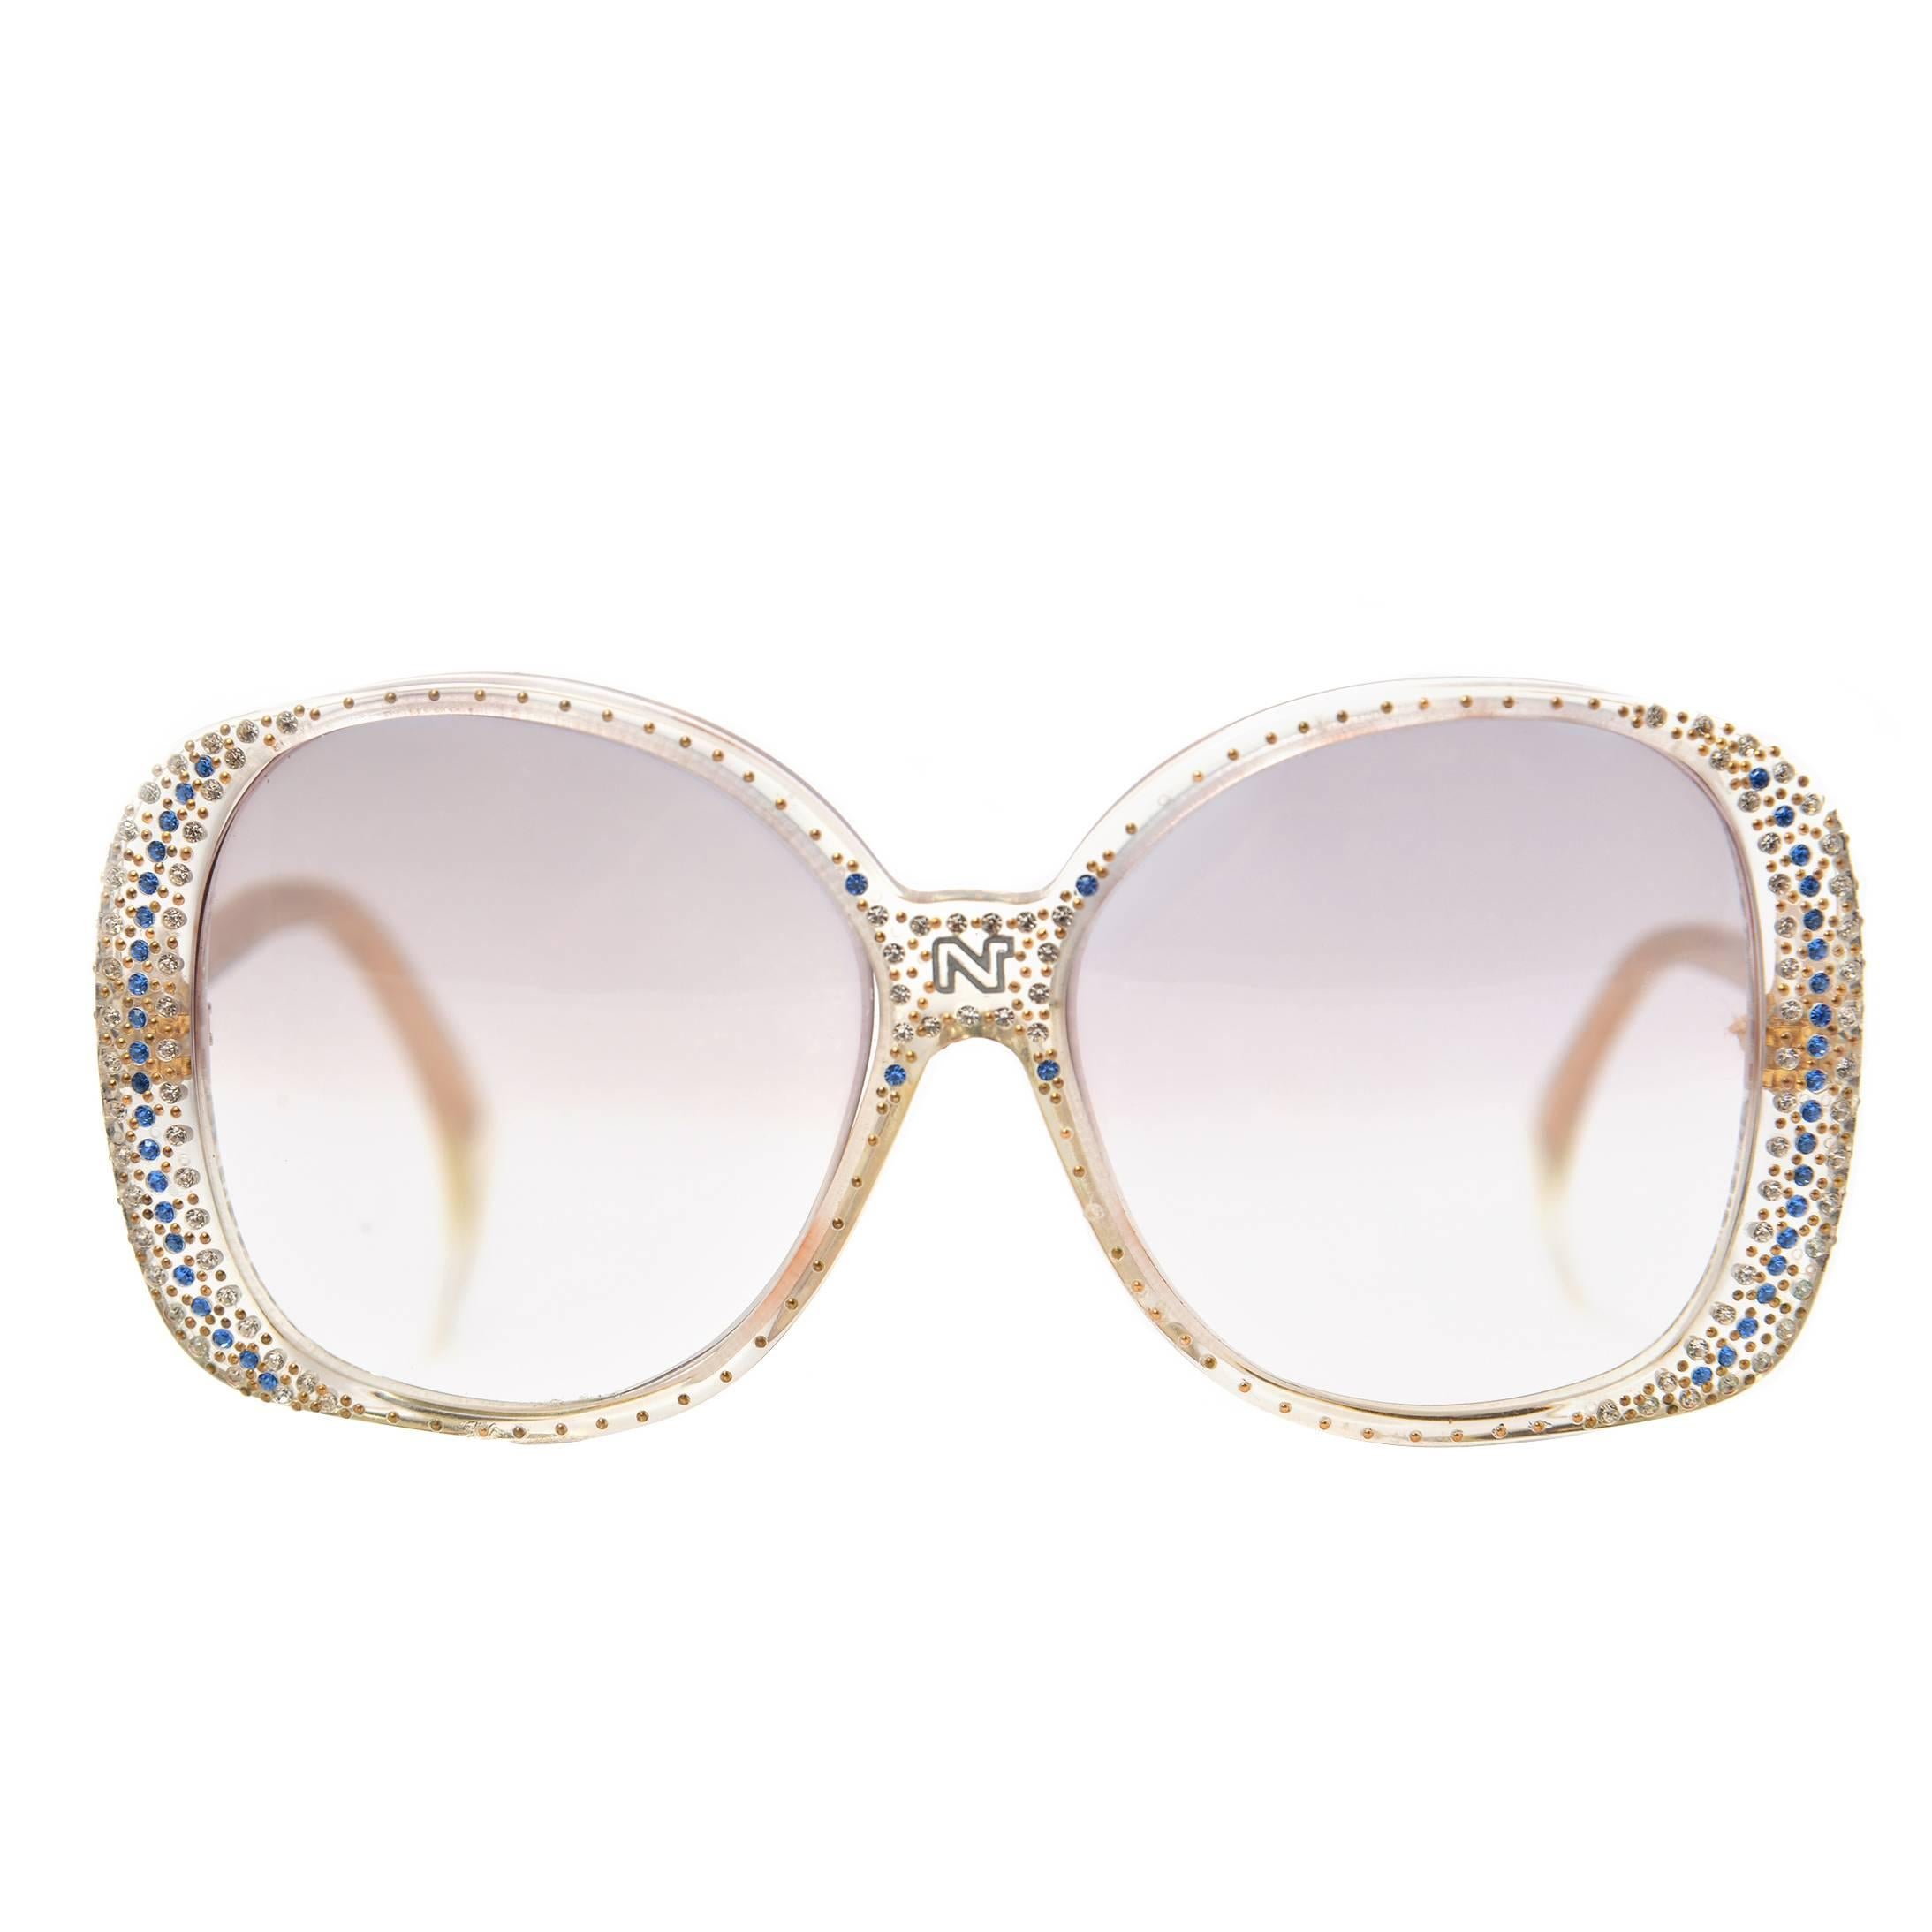 1980s Nina Ricci Clear Prescription Sunglasses with Rhinestones 